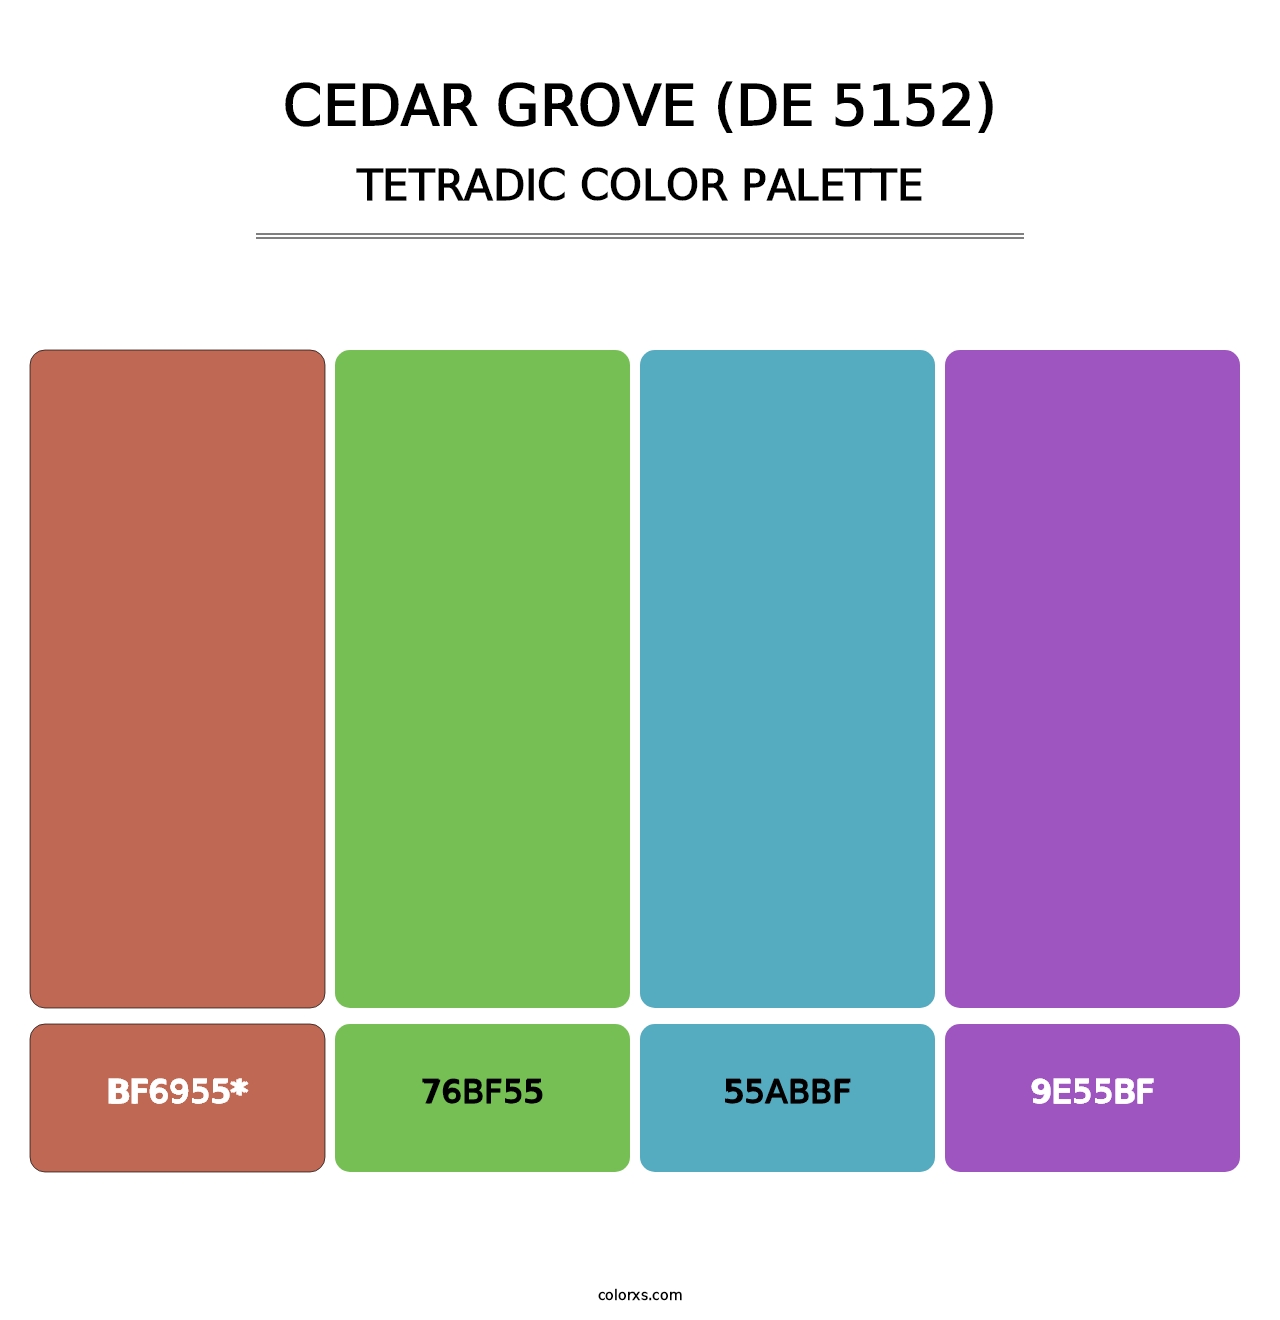 Cedar Grove (DE 5152) - Tetradic Color Palette